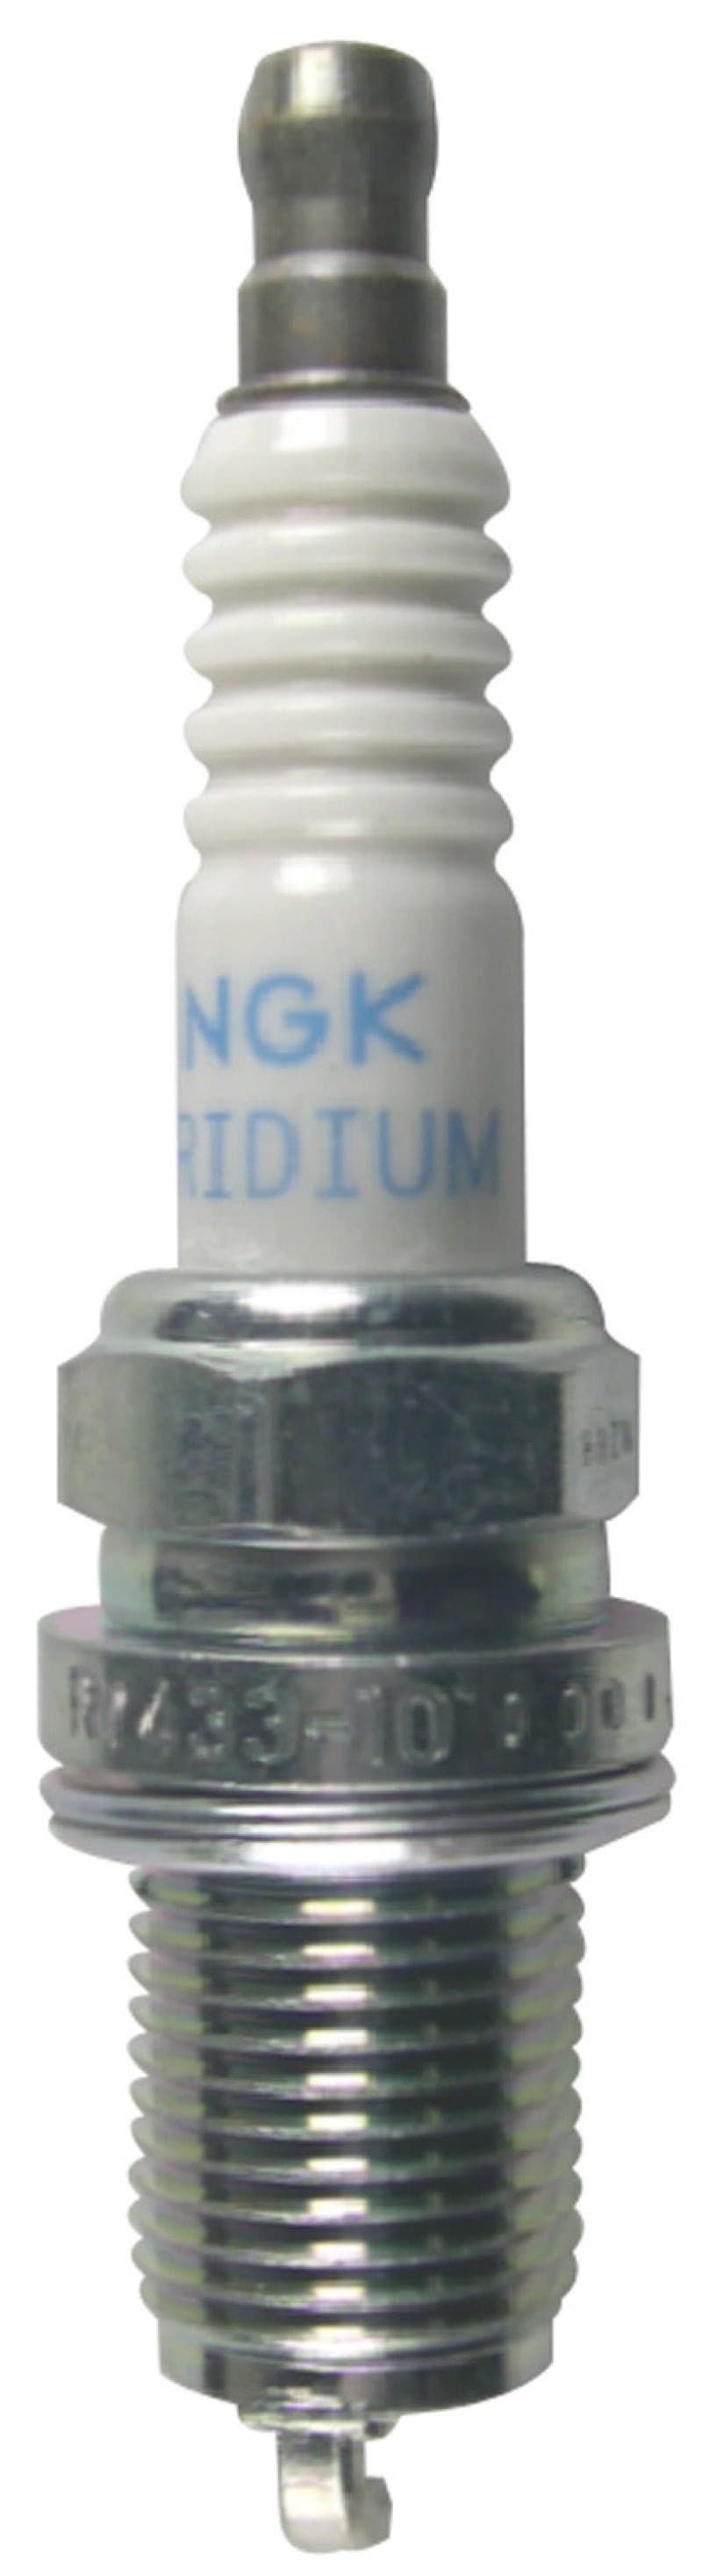 NGK Racing Spark Plug Box of 4 (R7433-9).